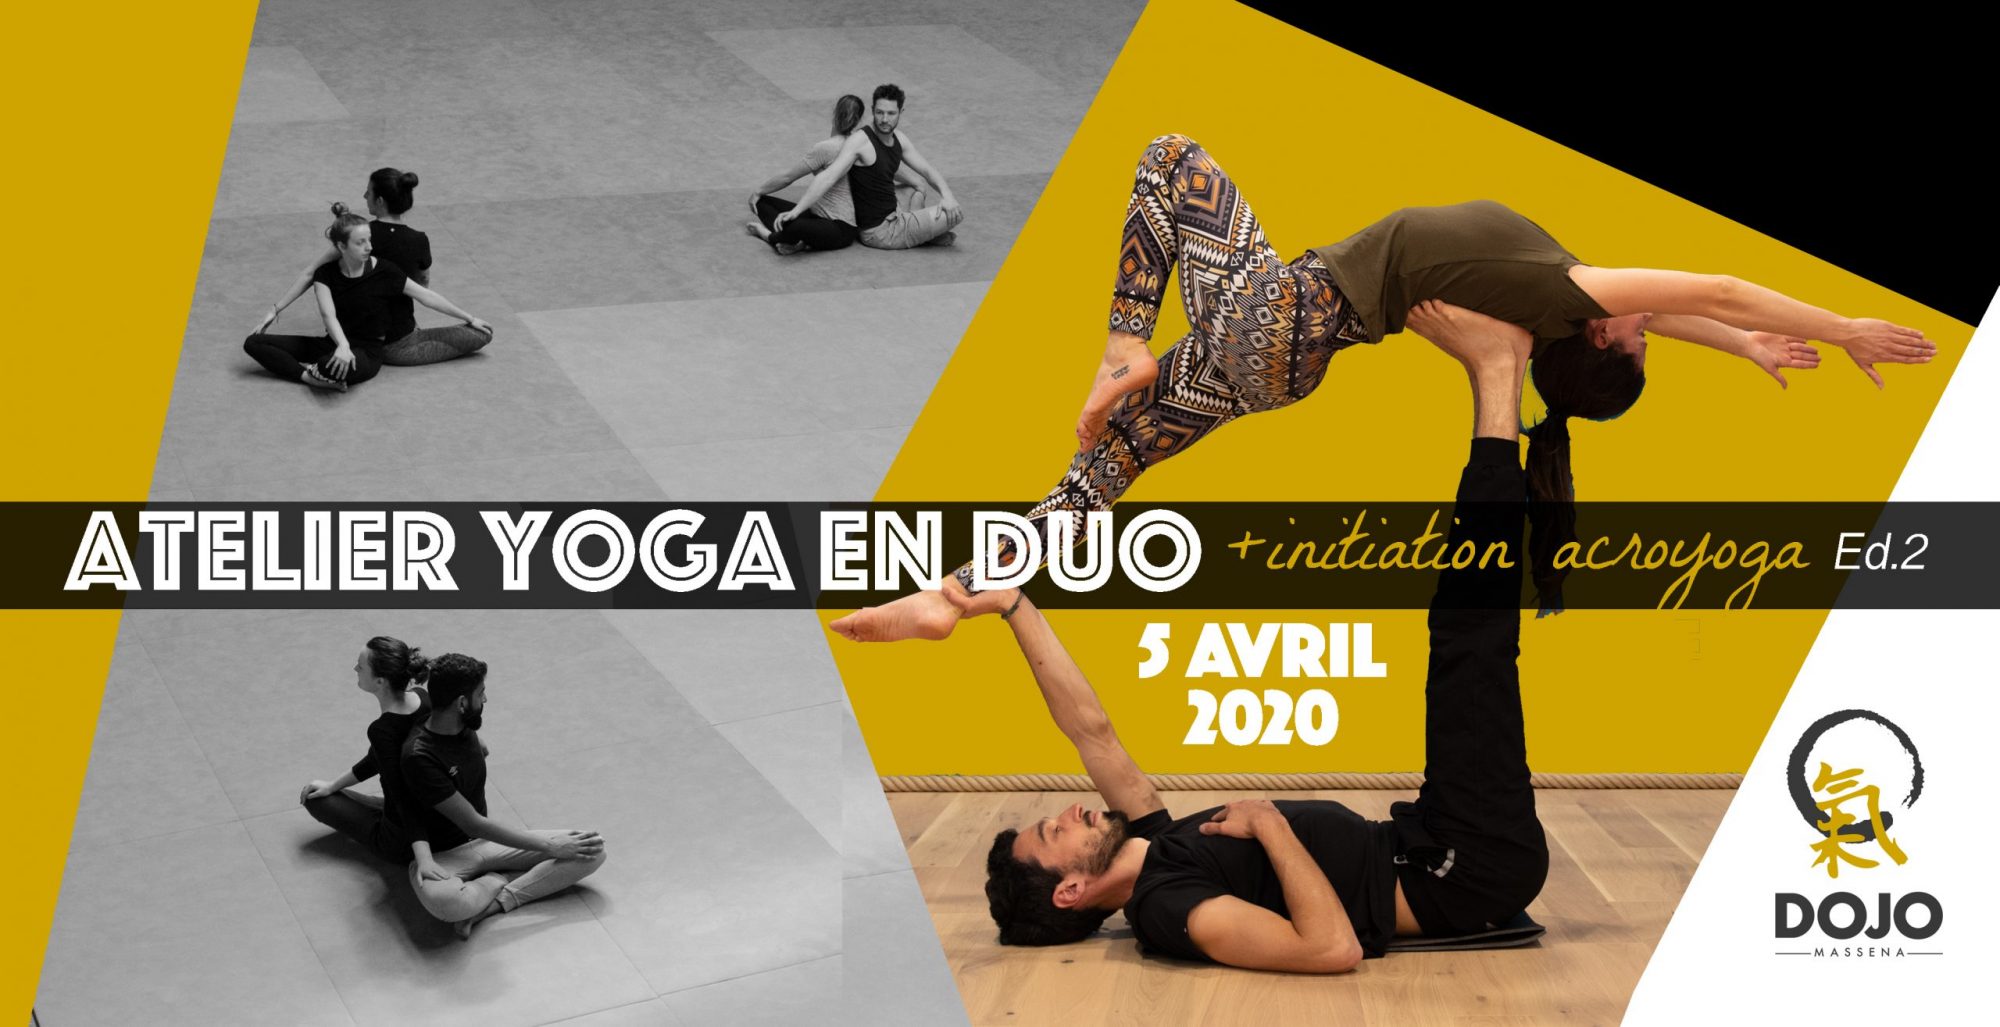 acroyoga ypga partenaire yoga en duo